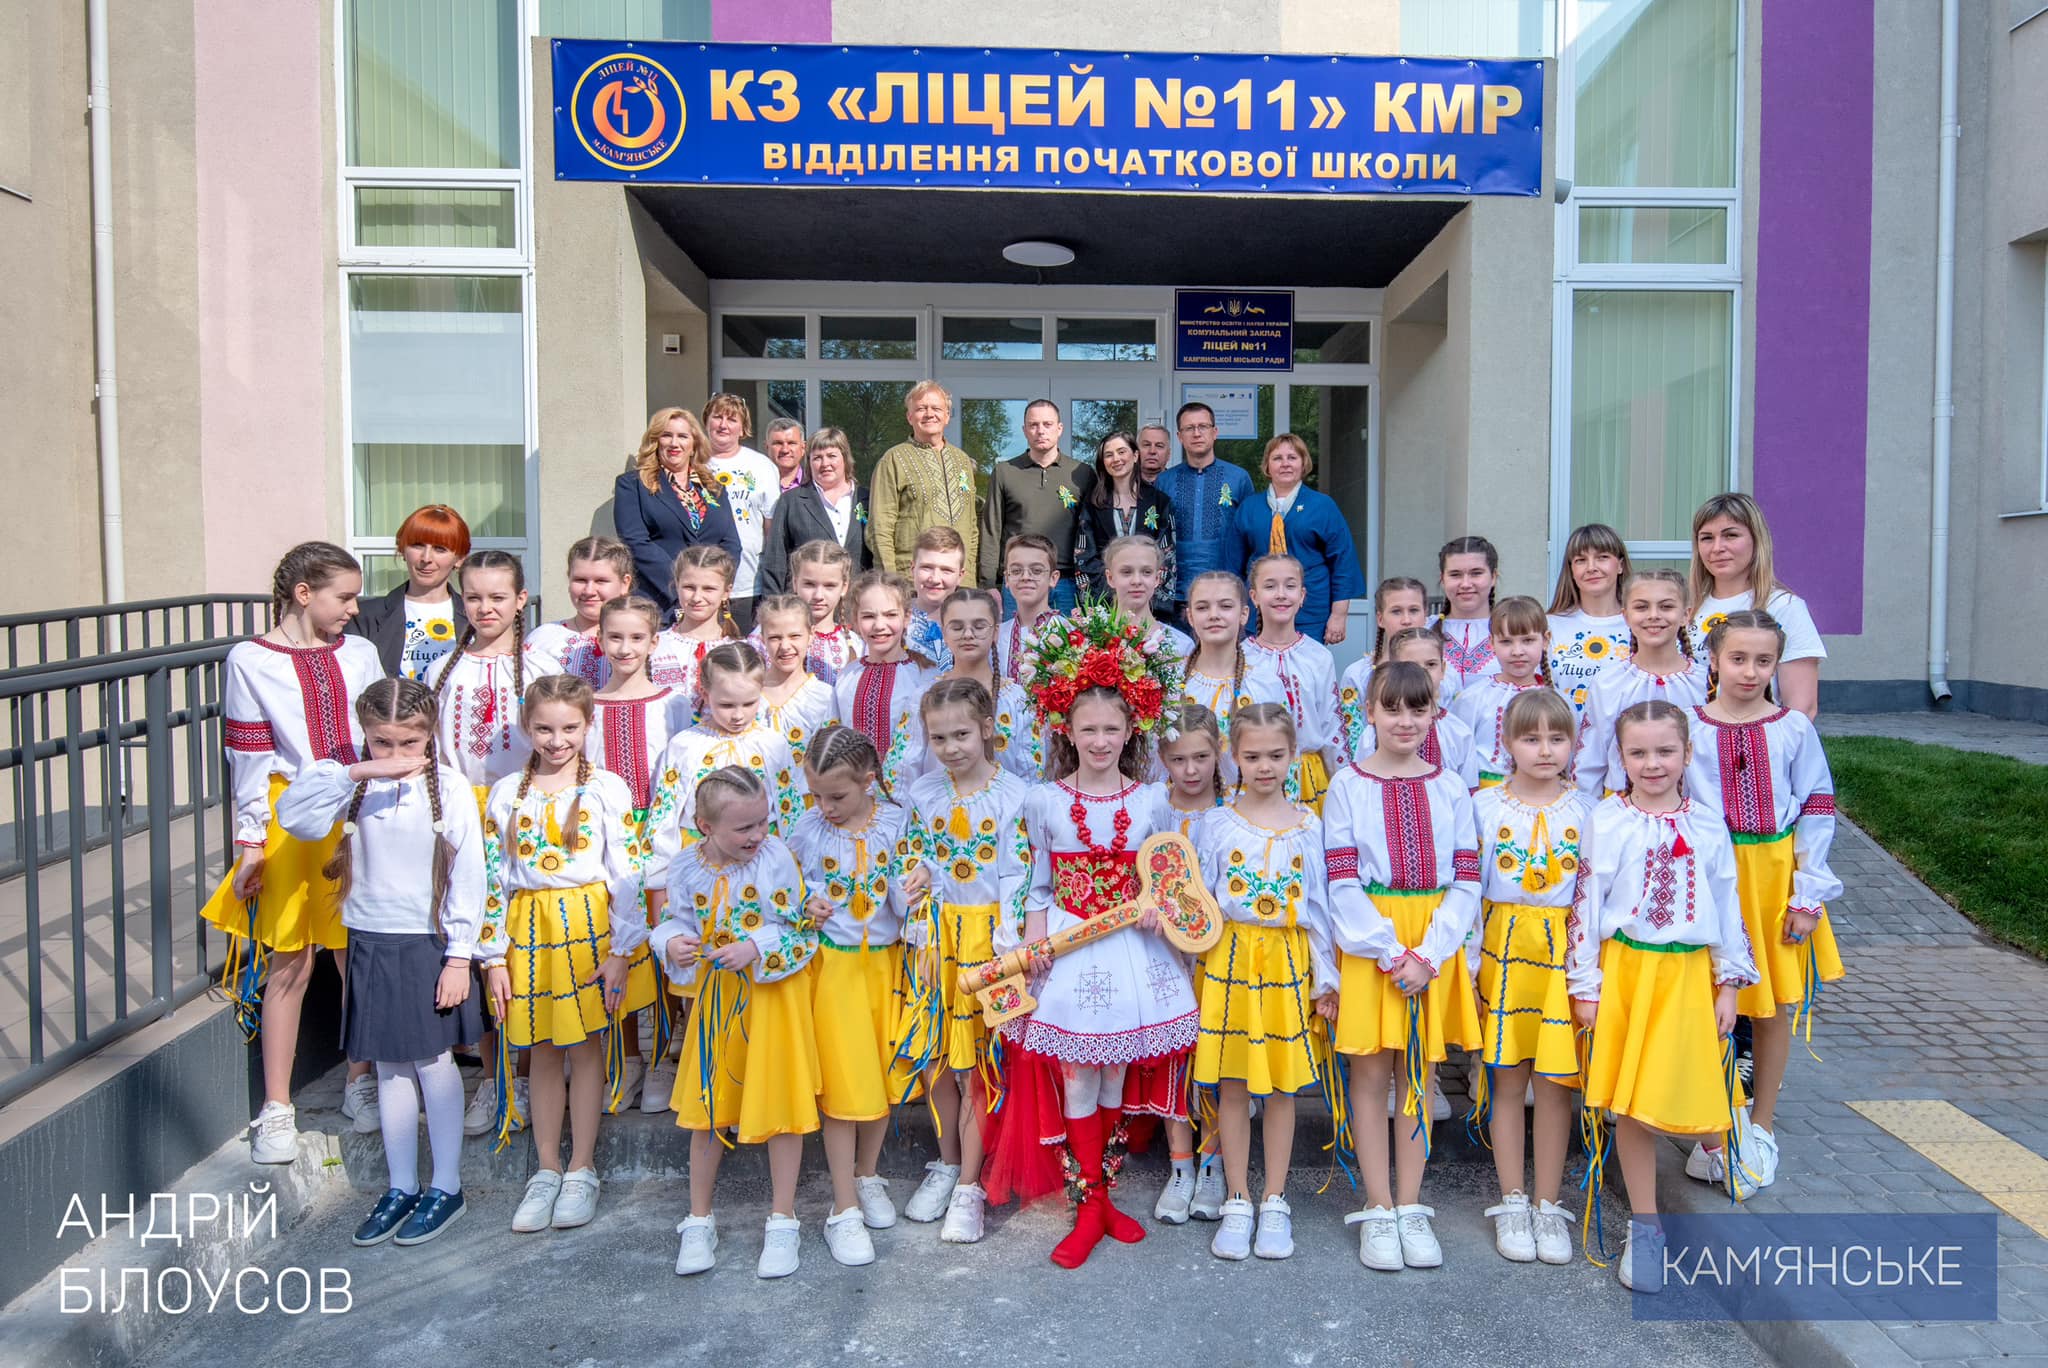 Мер Кам'янського Андрій Білоусов оголосив про відкриття нової школи - фото 4